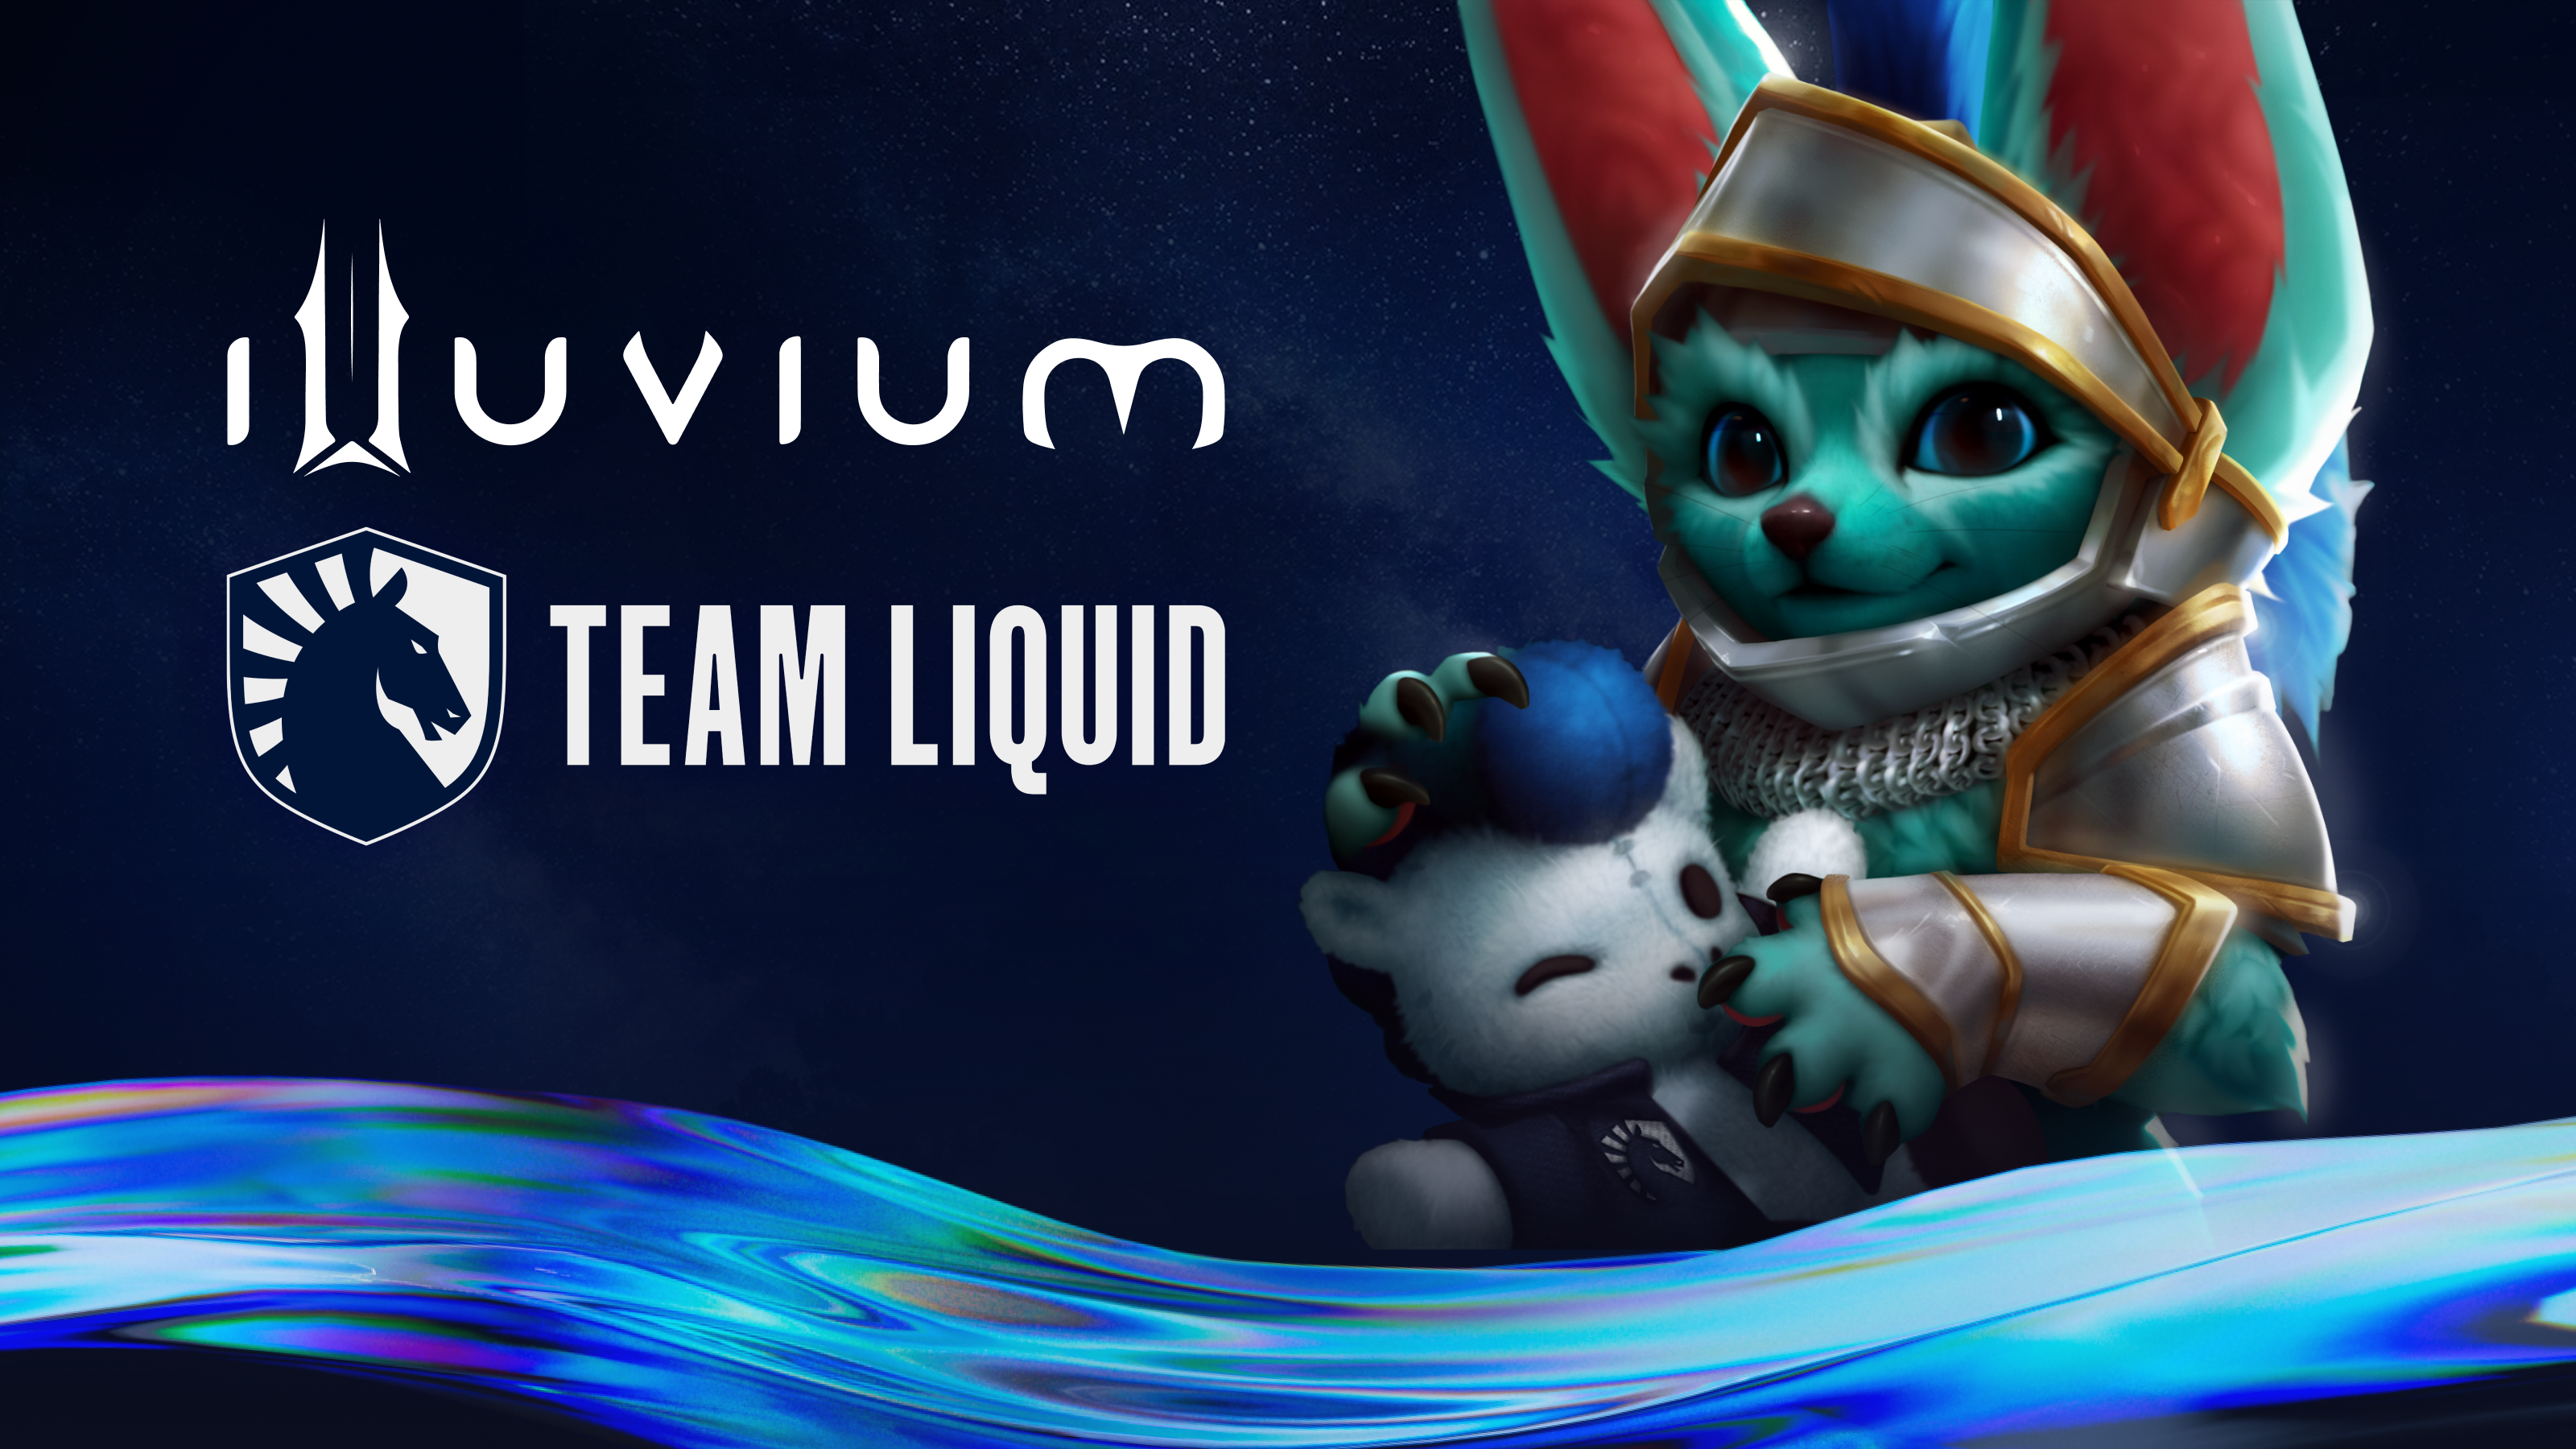 Illuvium x Epic Games Store : r/illuviumio